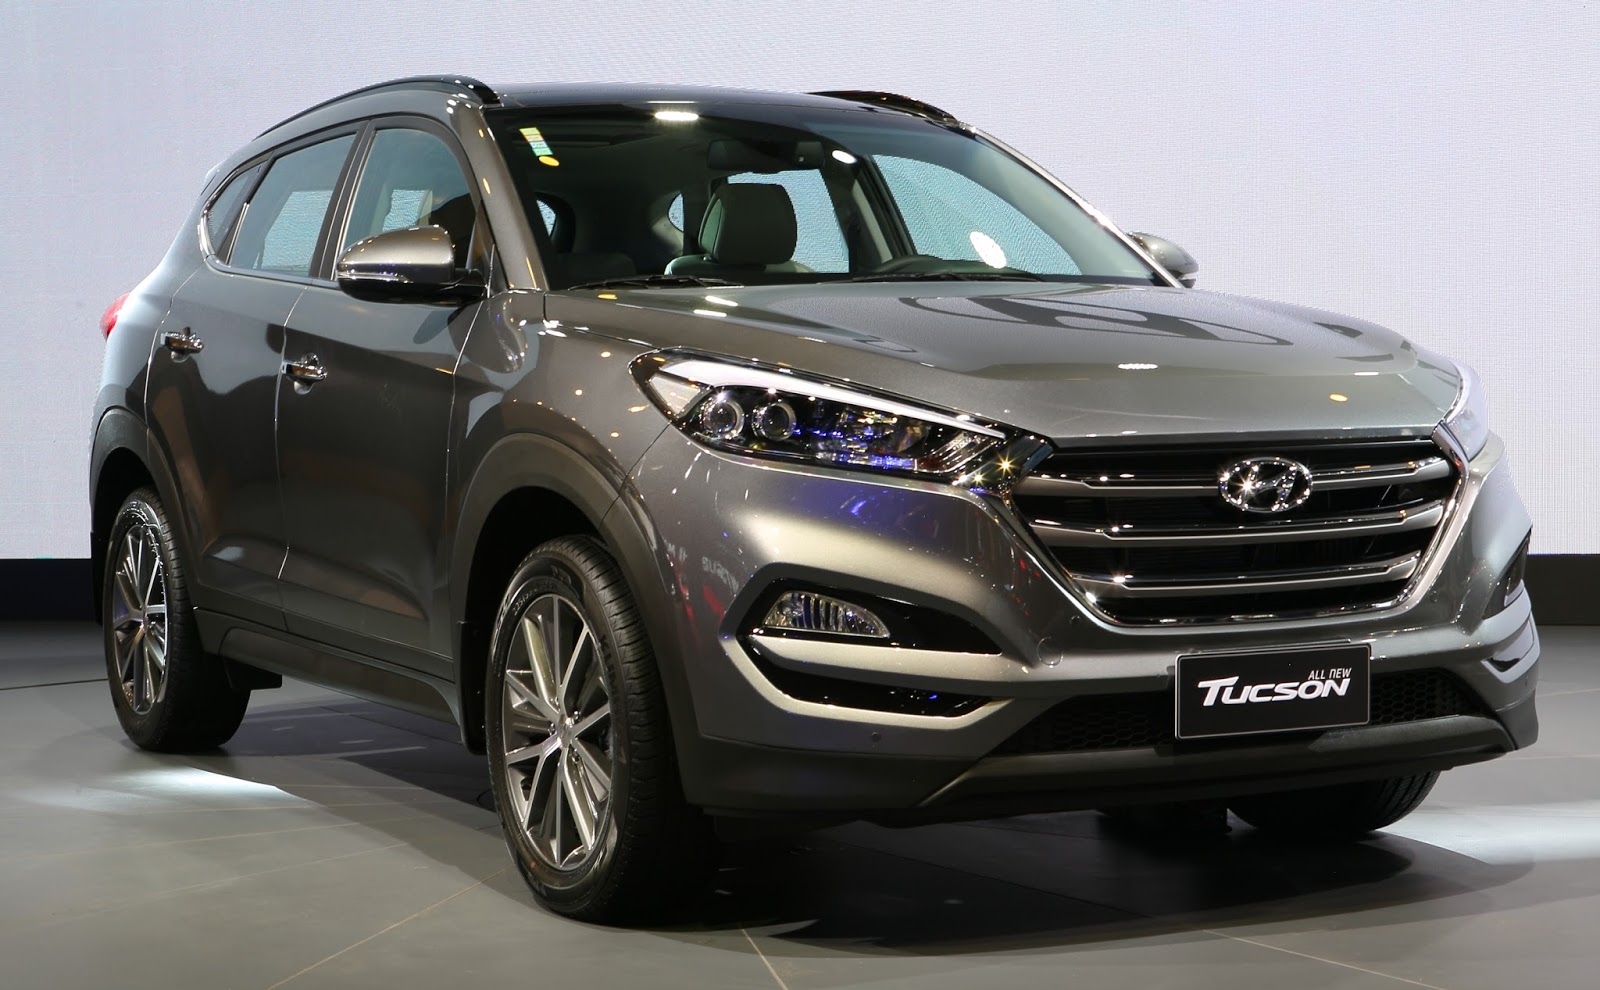 Hyundai mostra novo Tucson, Elantra 2017 e ix35 mais econômico